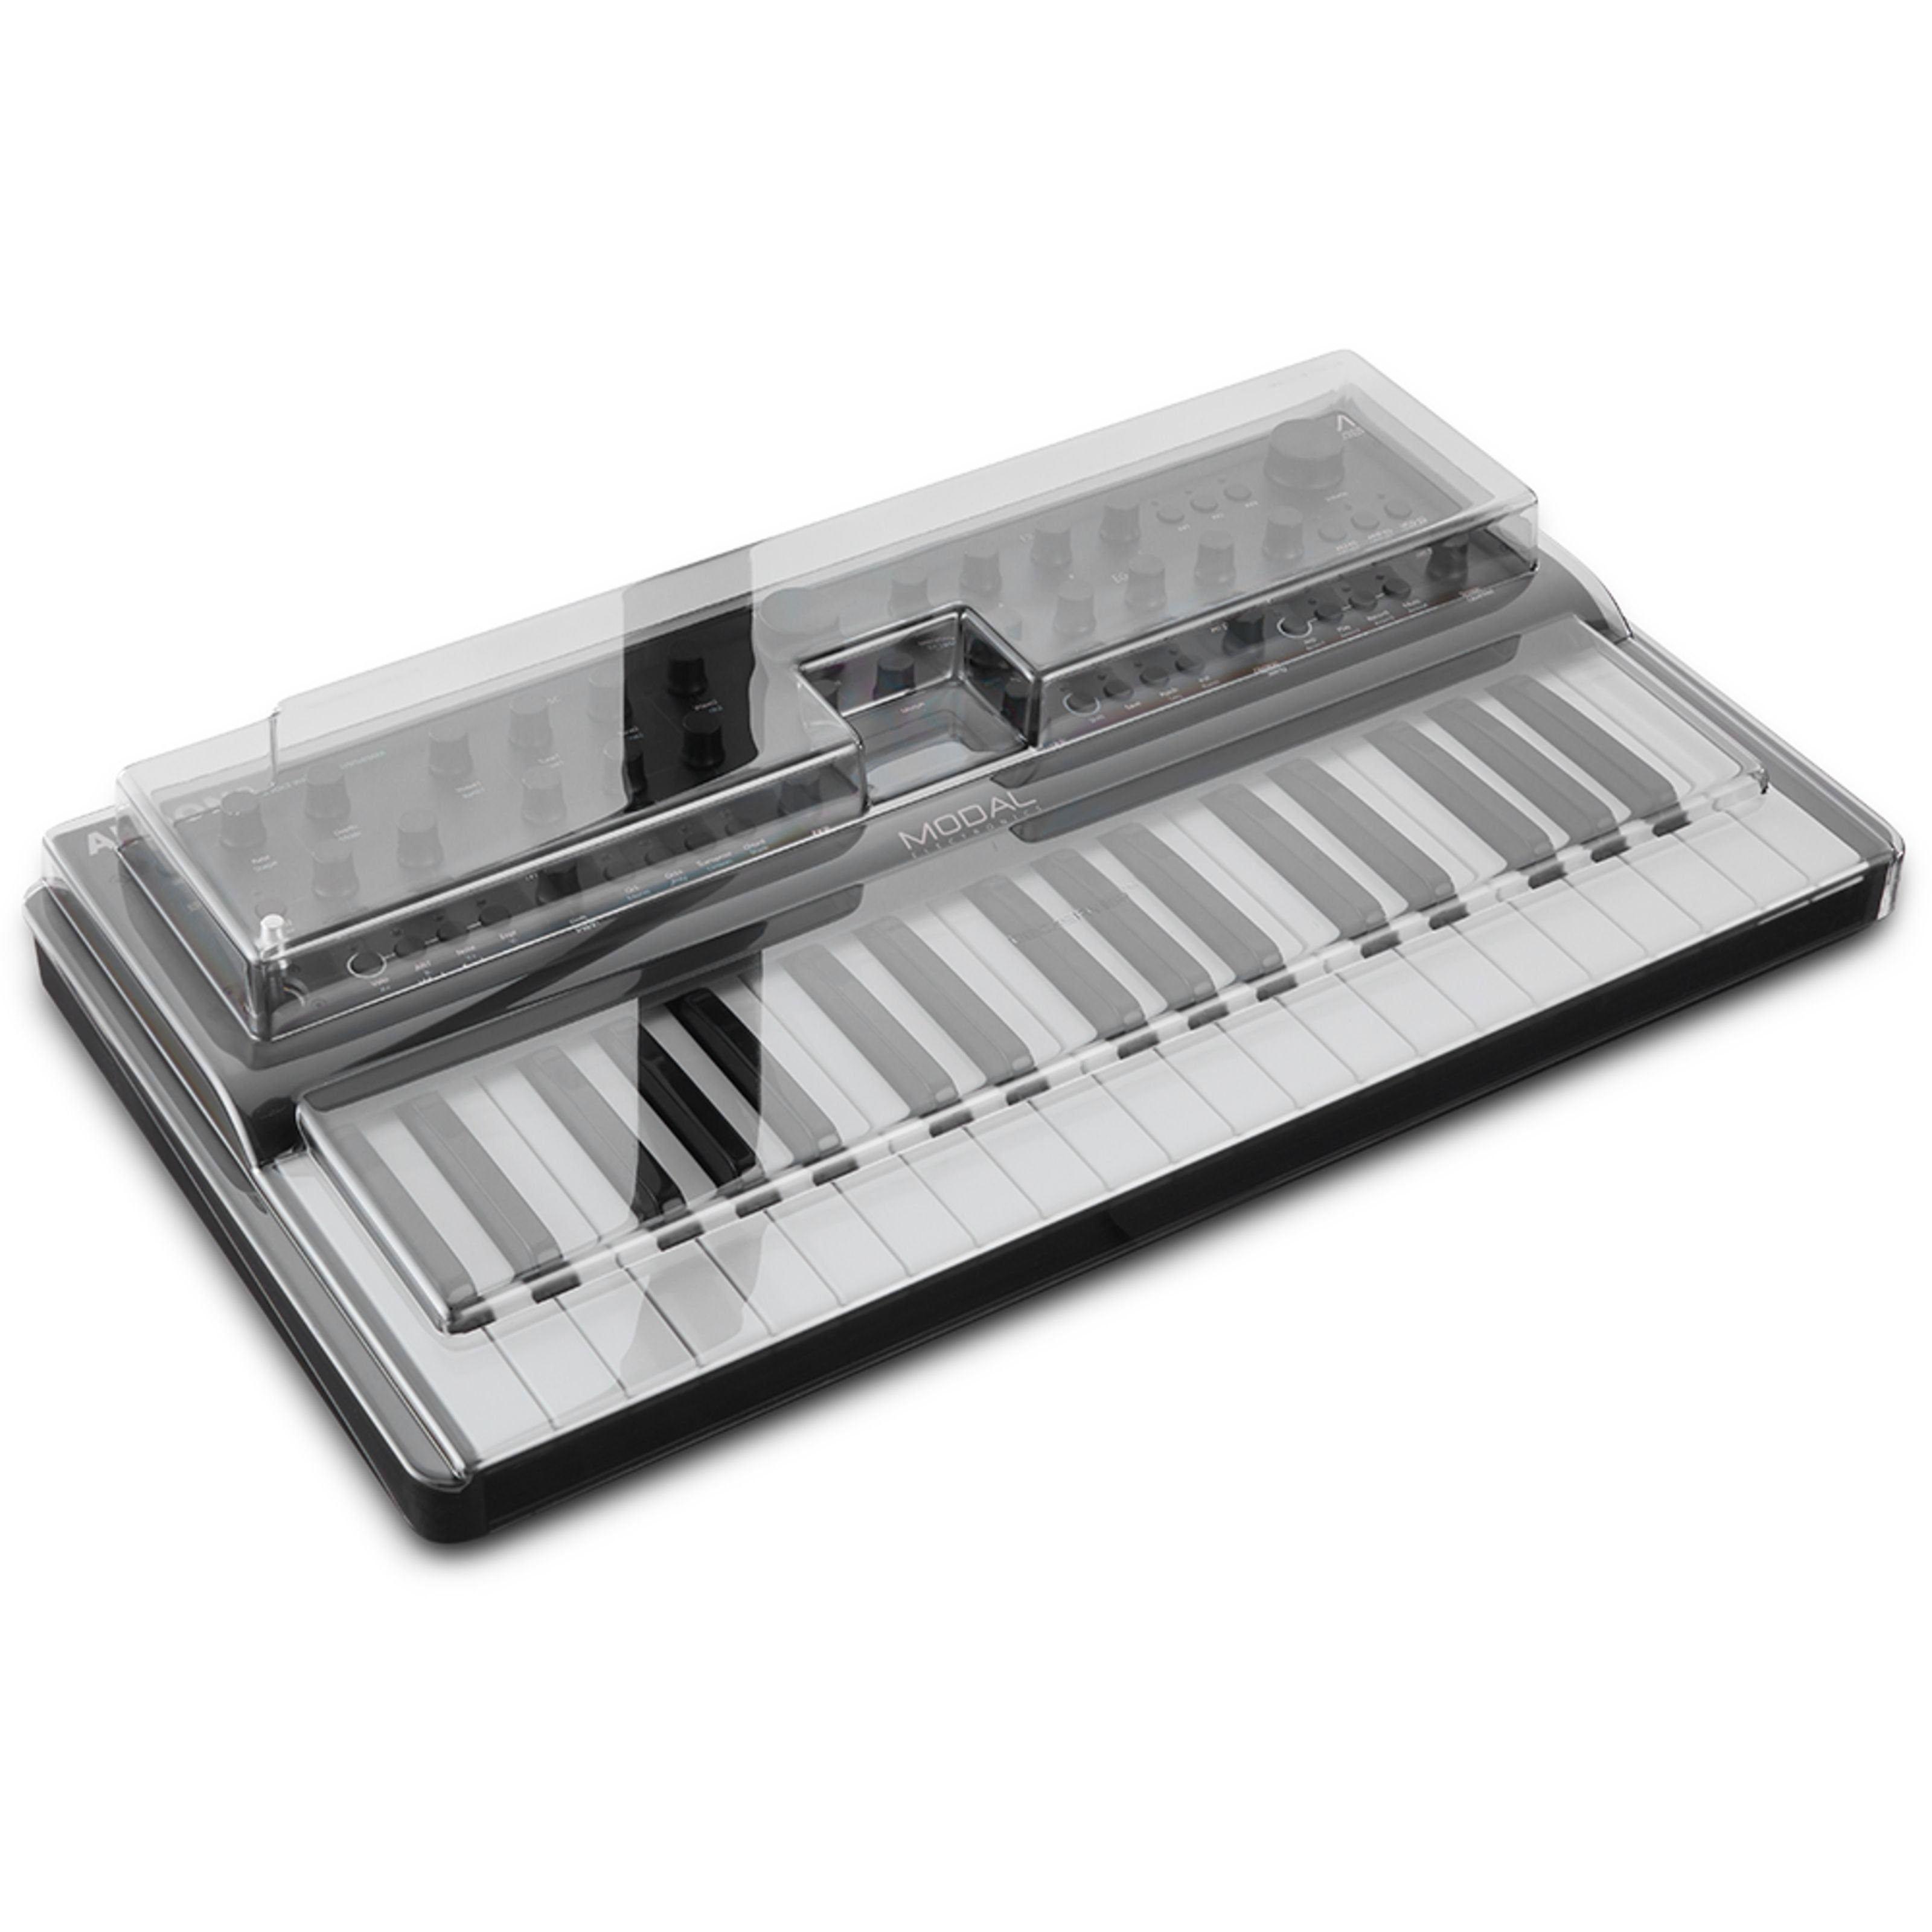 - / Keyboards Decksaver Argon8 Spielzeug-Musikinstrument, Modal Cobalt8 für Abdeckung Cover